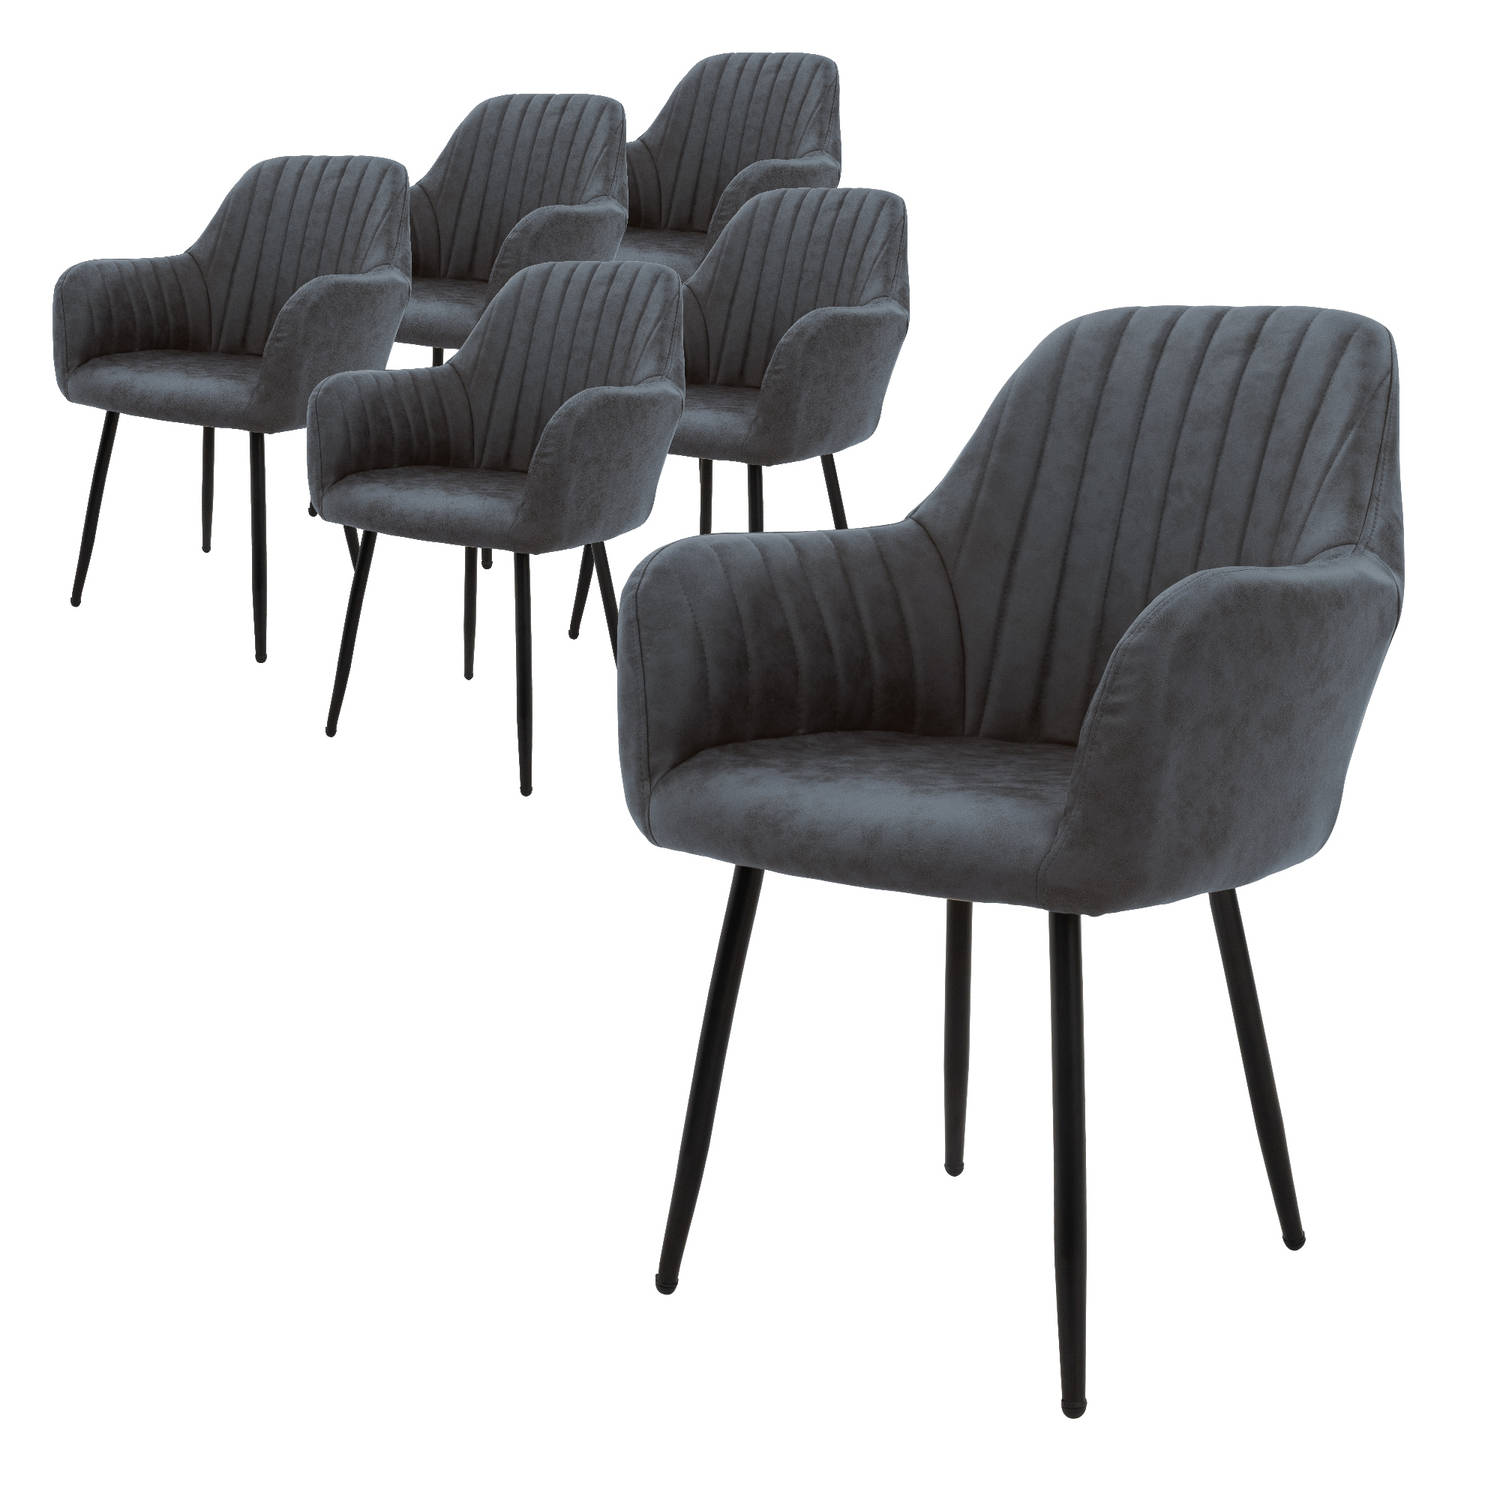 ML-Design set van 6 eetkamerstoelen met rugleuning en armleuningen, antraciet, keukenstoelen met PU kunstlederen bekleding, gestoffeerde stoelen met metalen poten, ergonomische woo